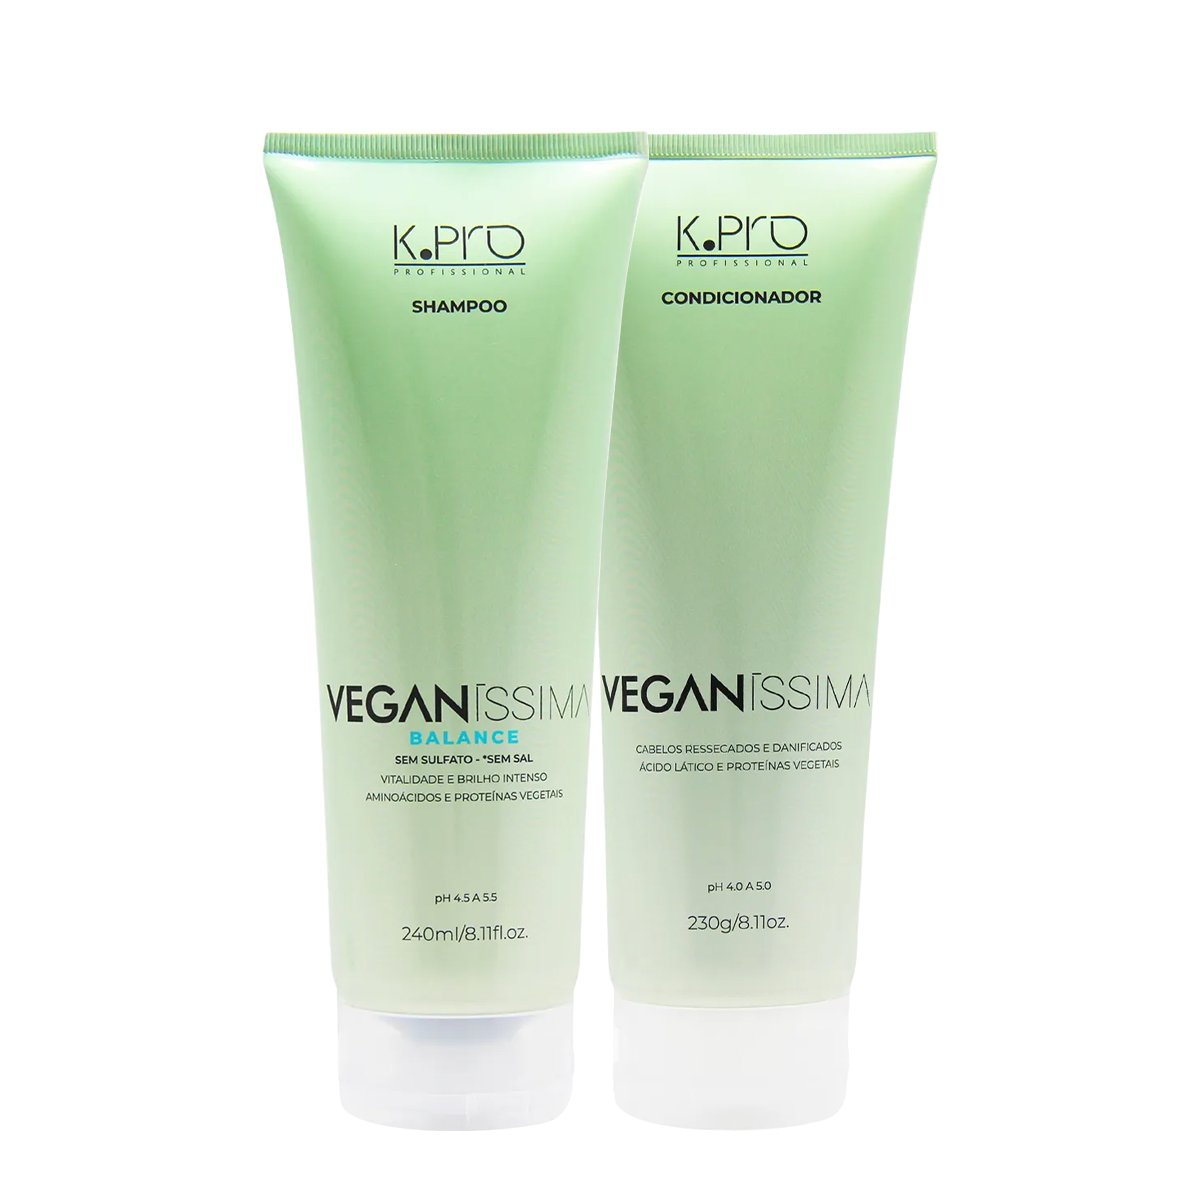 Kit K.Pro Veganissima Balance Shampoo e Condicionador Cabelos Ressecados (2 produtos) ÚNICO 1